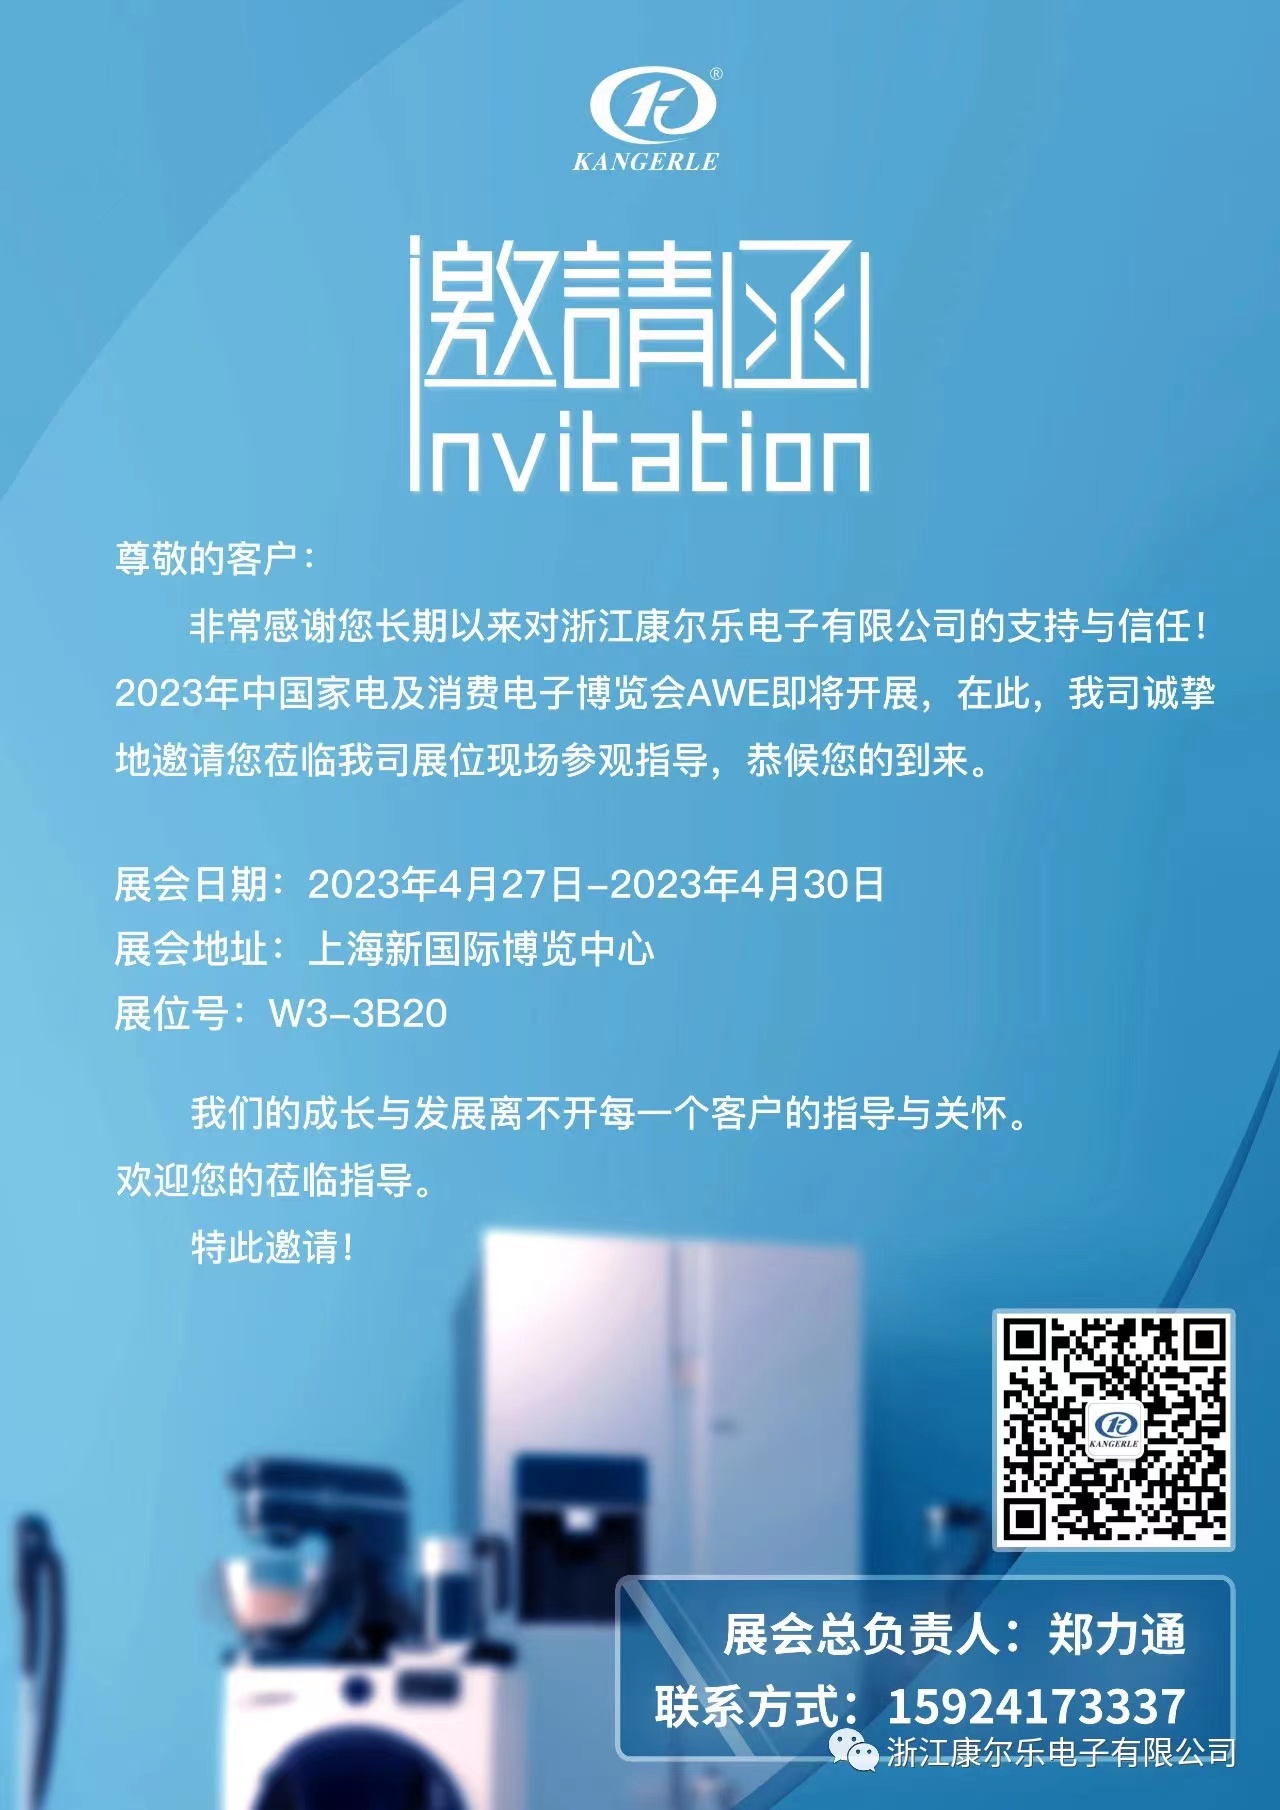 2023年中国家电及消费电子博览会AWE即将开展！.jpg